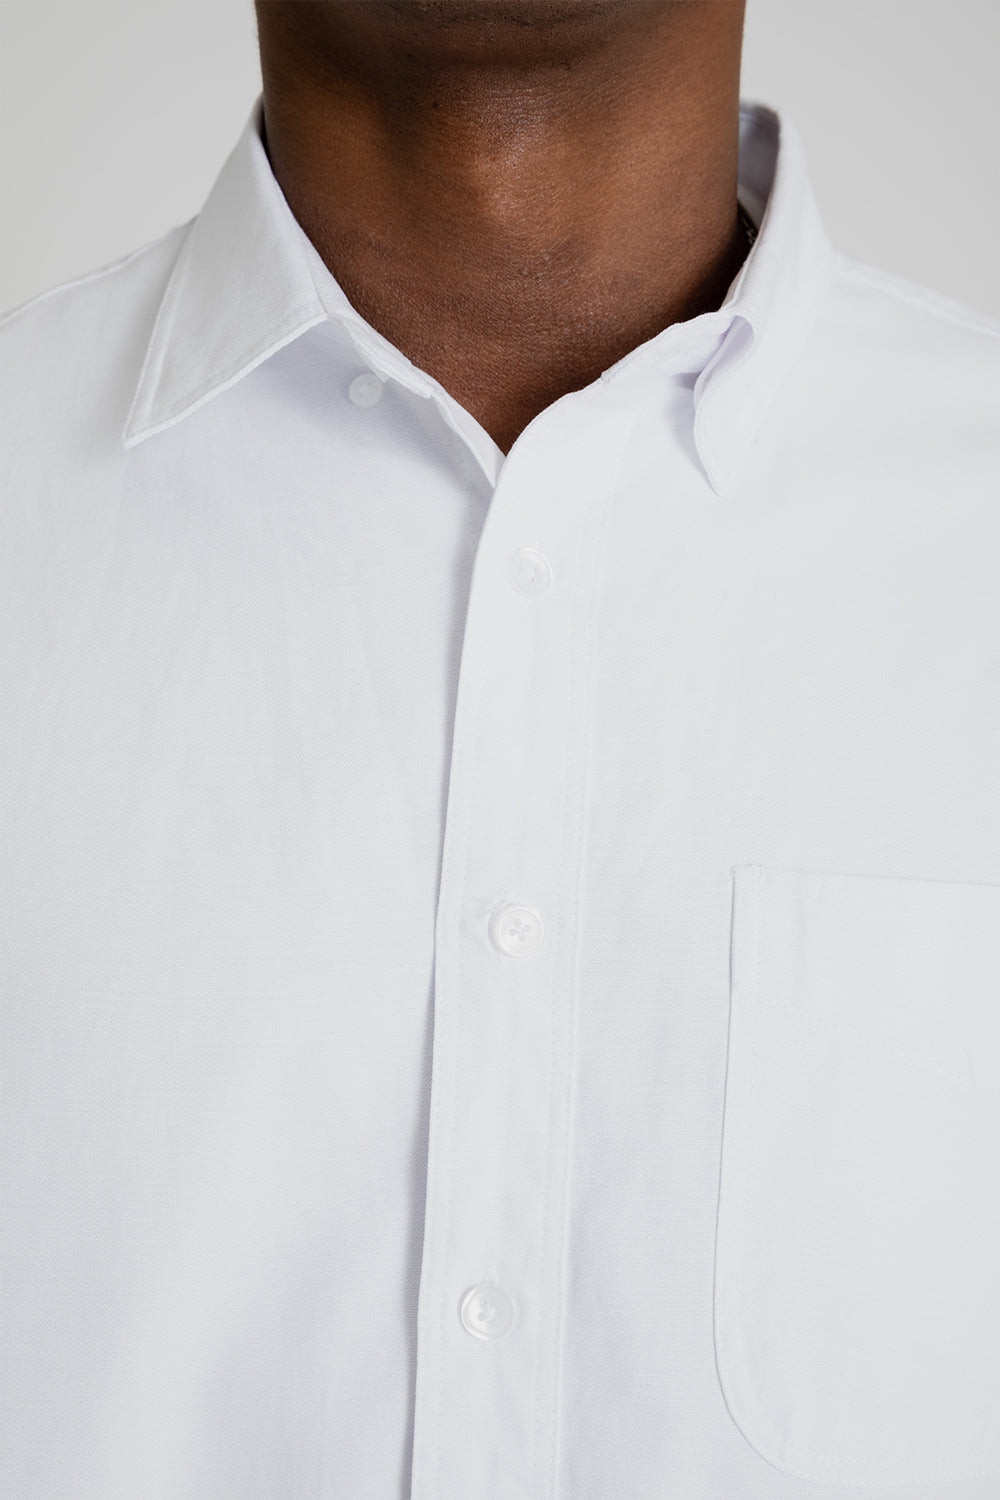 Frizmworks OG Oxford Oversized Shirt White Detail 01